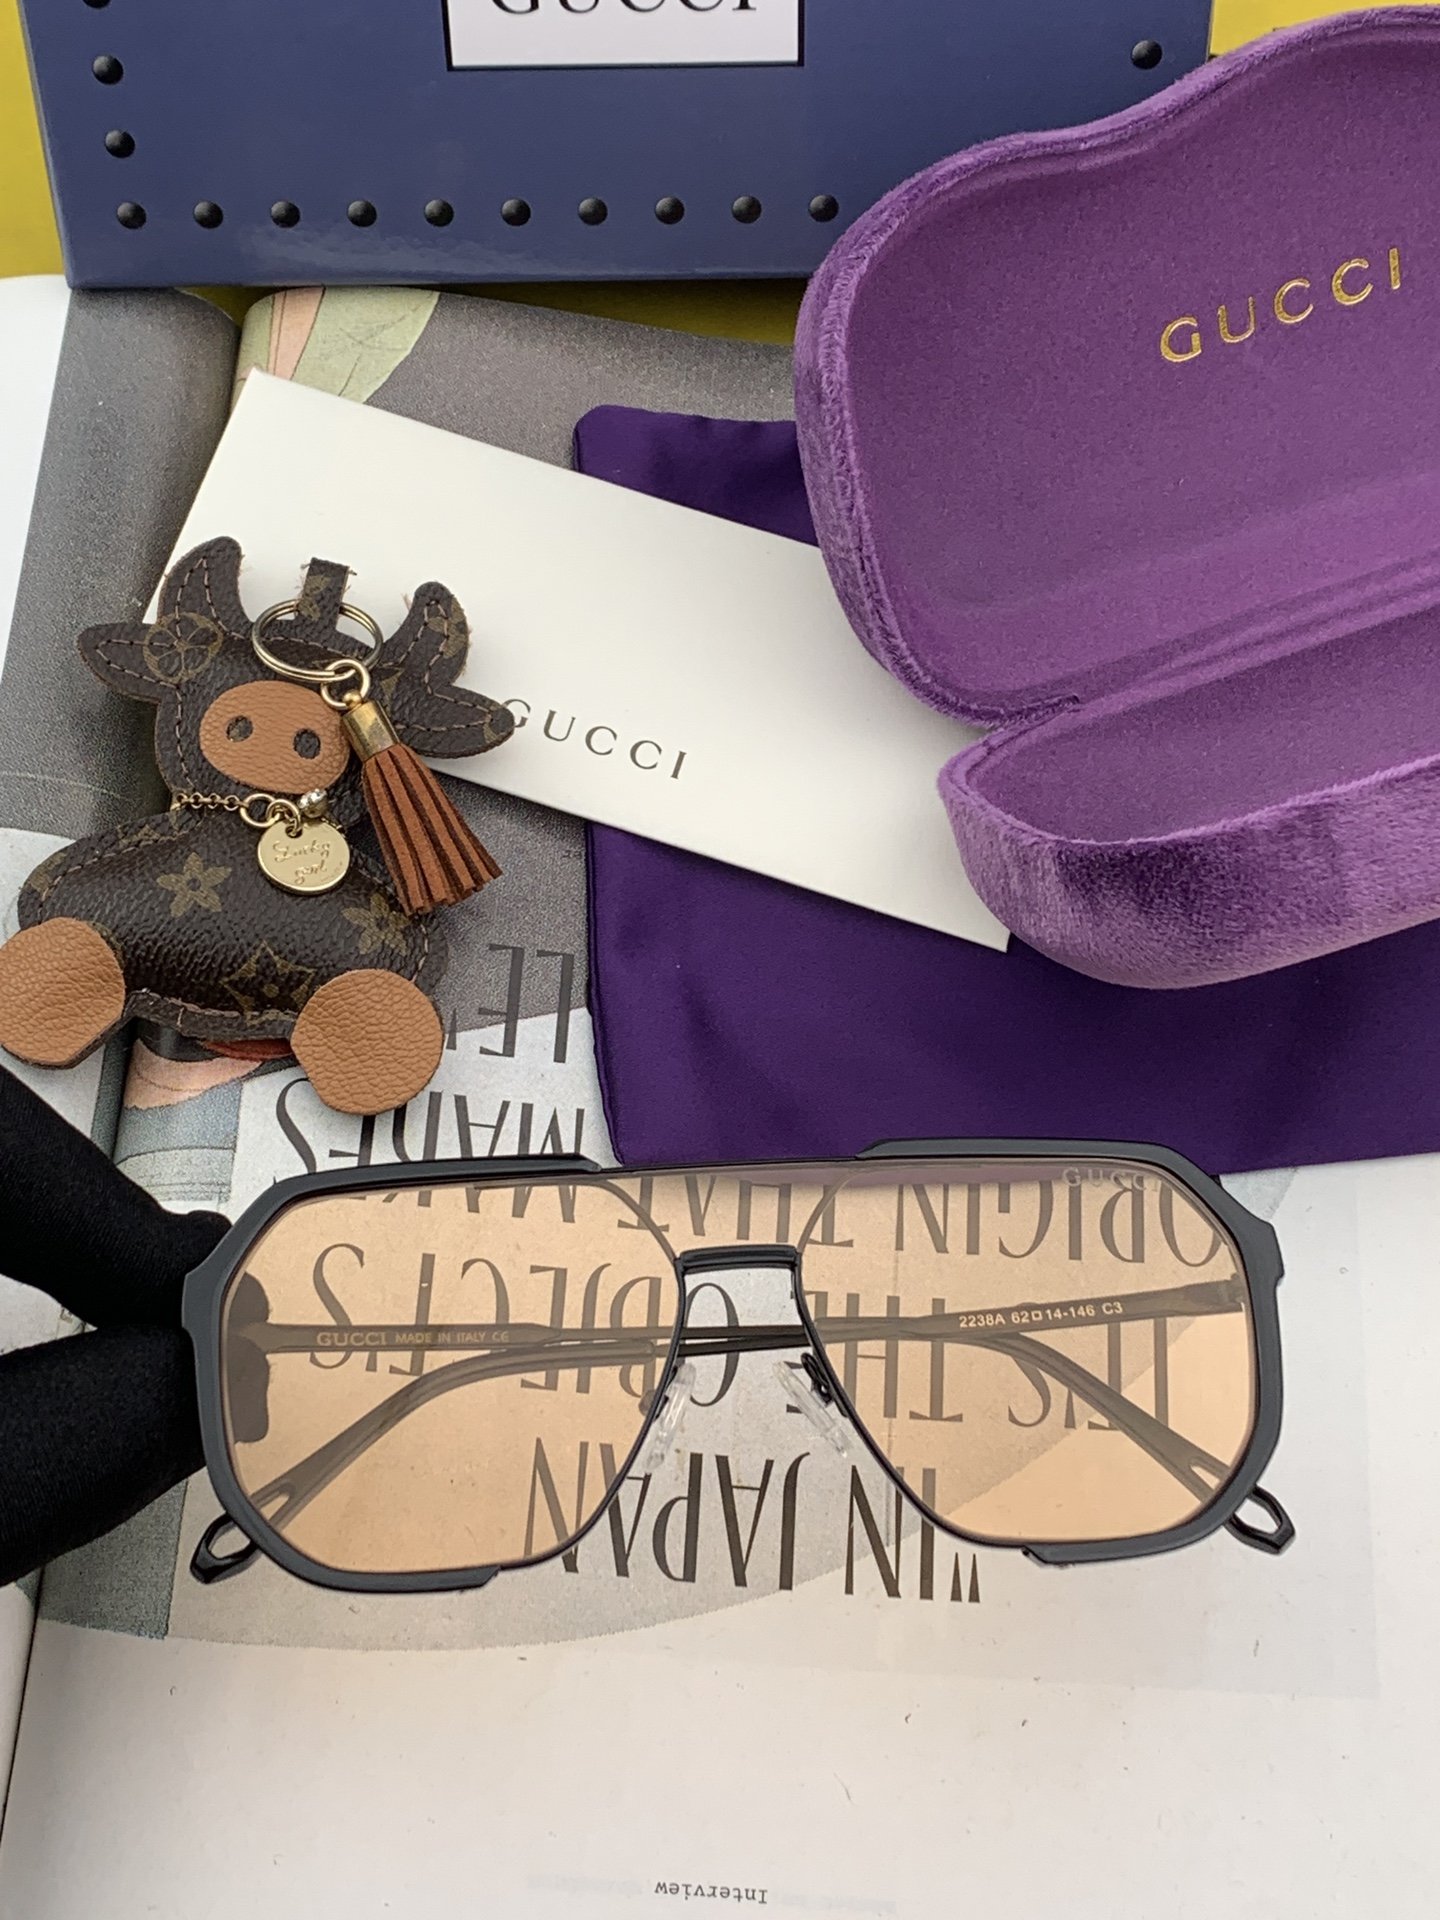 Gucci古奇新款连体驶驾镜墨镜出行必众备多明星同款太阳镜男女太士阳镜飞行型号G011